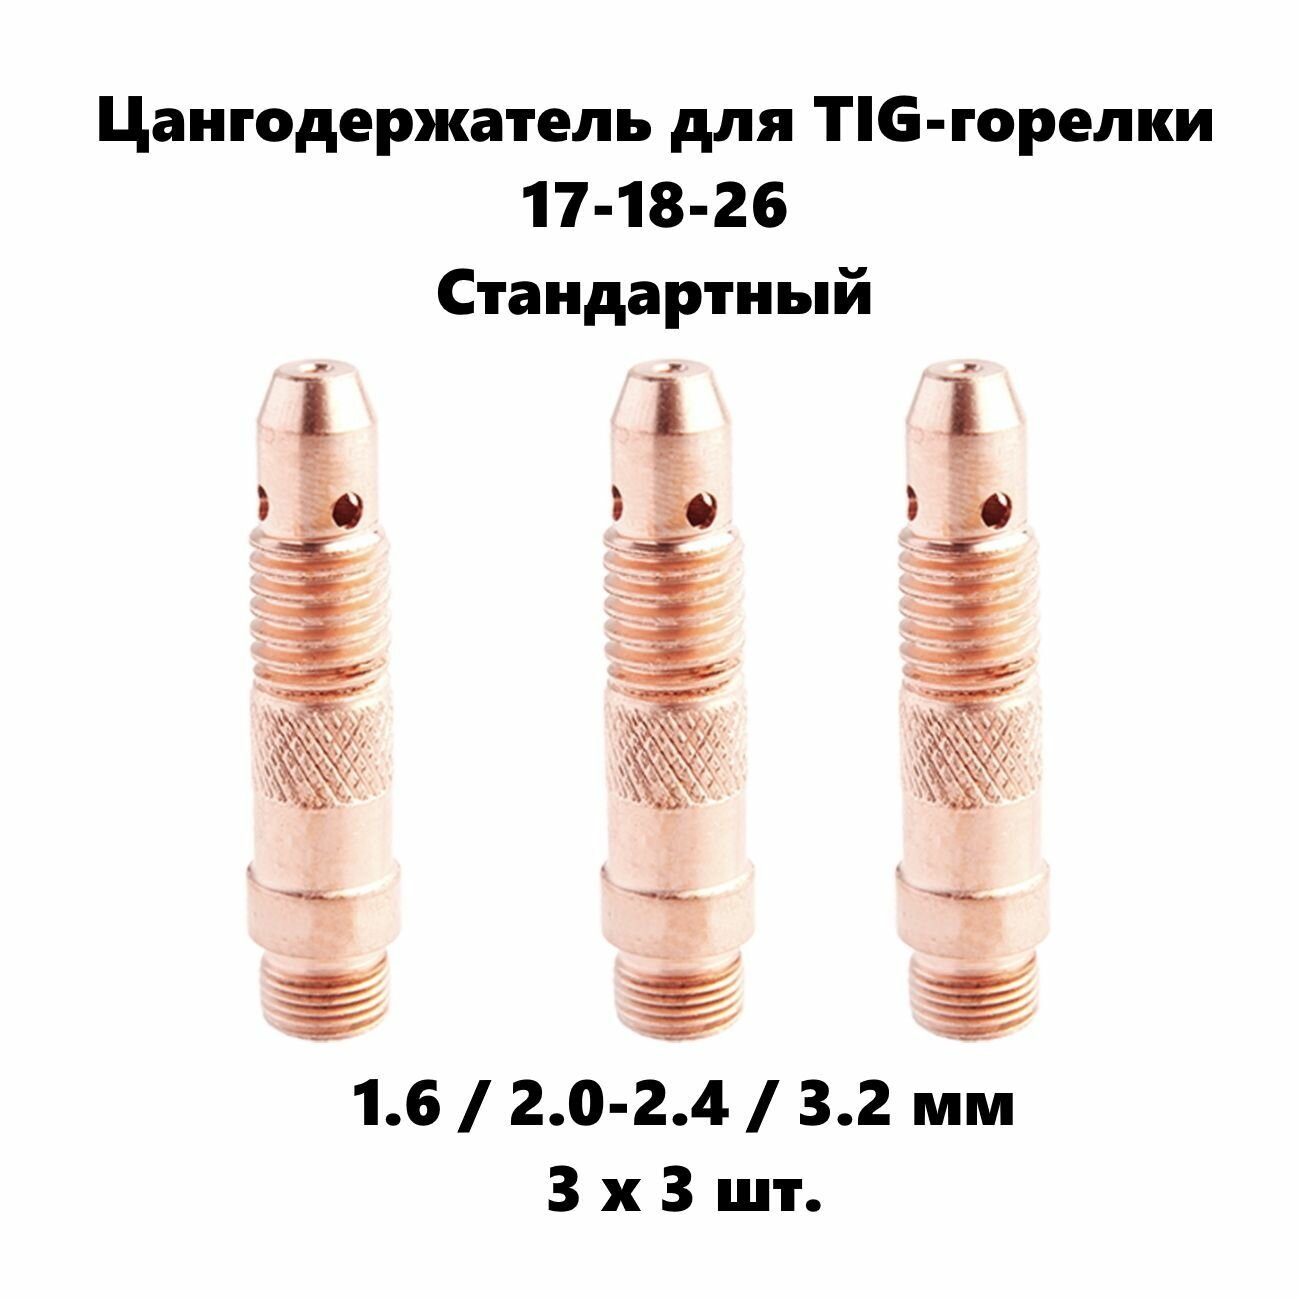 Набор цангодержателей 1.6 - 3.2 мм диаметр 3 x 3 шт. для Tig горелки 17-18-26 стандартный